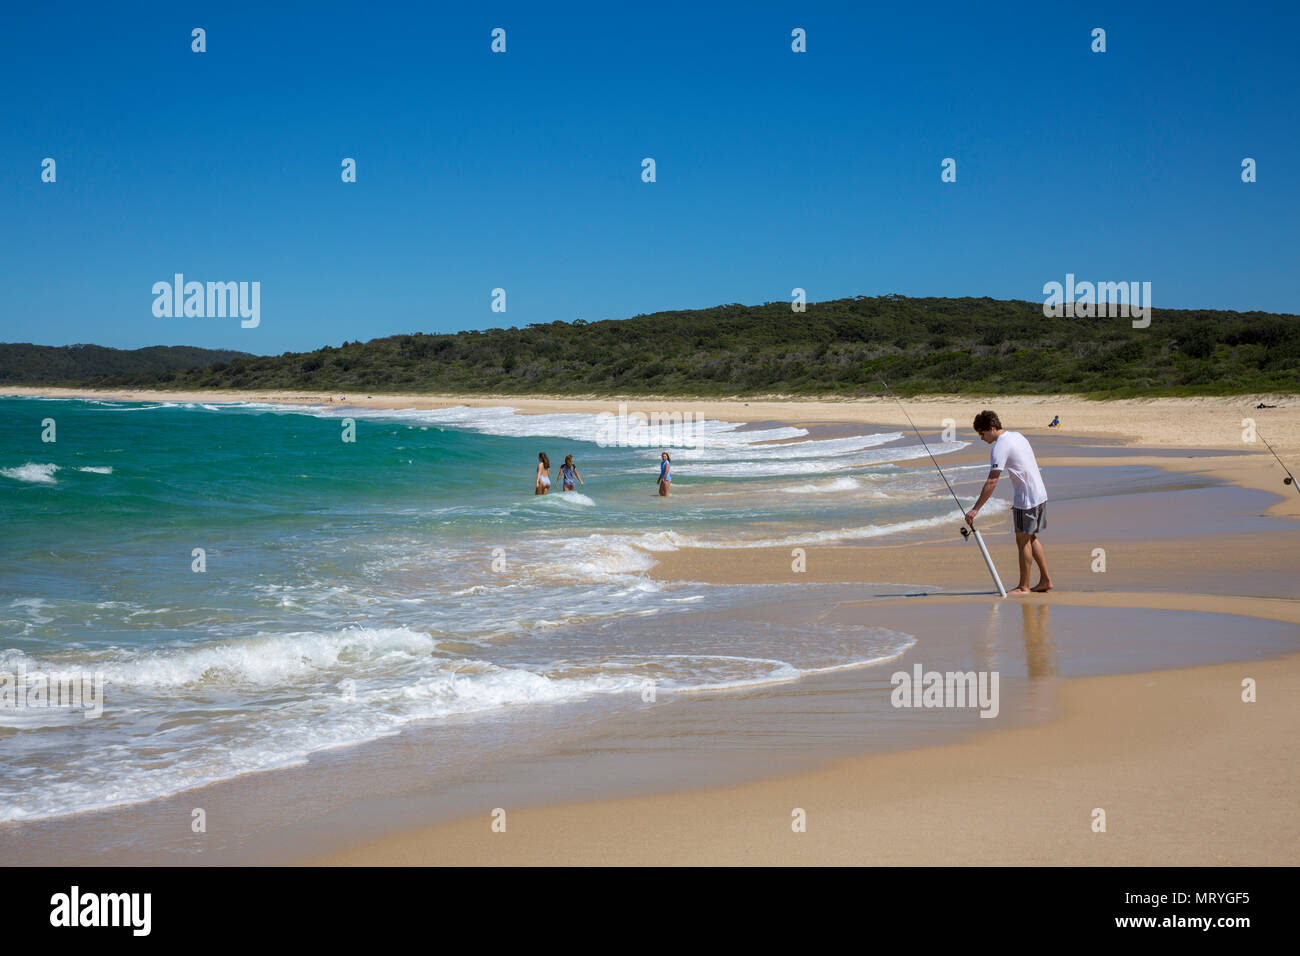 Uomo con attività di pesca nell'oceano a Cellito spiaggia a metà costa nord del Nuovo Galles del Sud, Australia Foto Stock